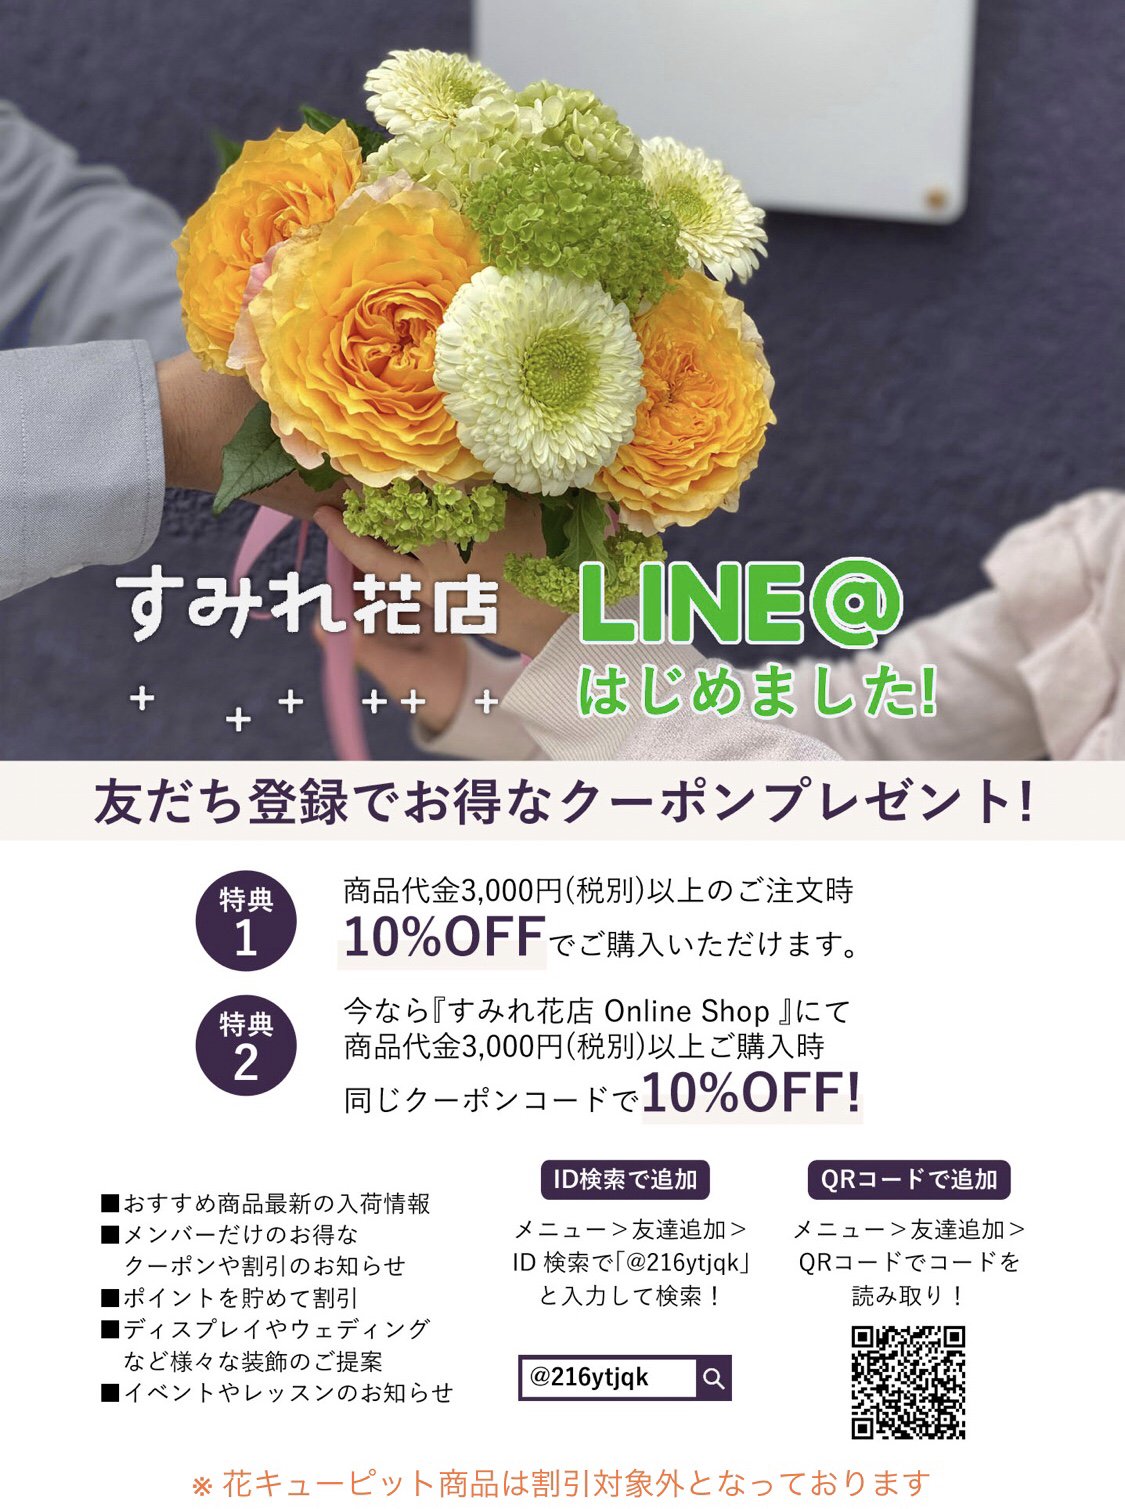 すみれ花店 Online Shop